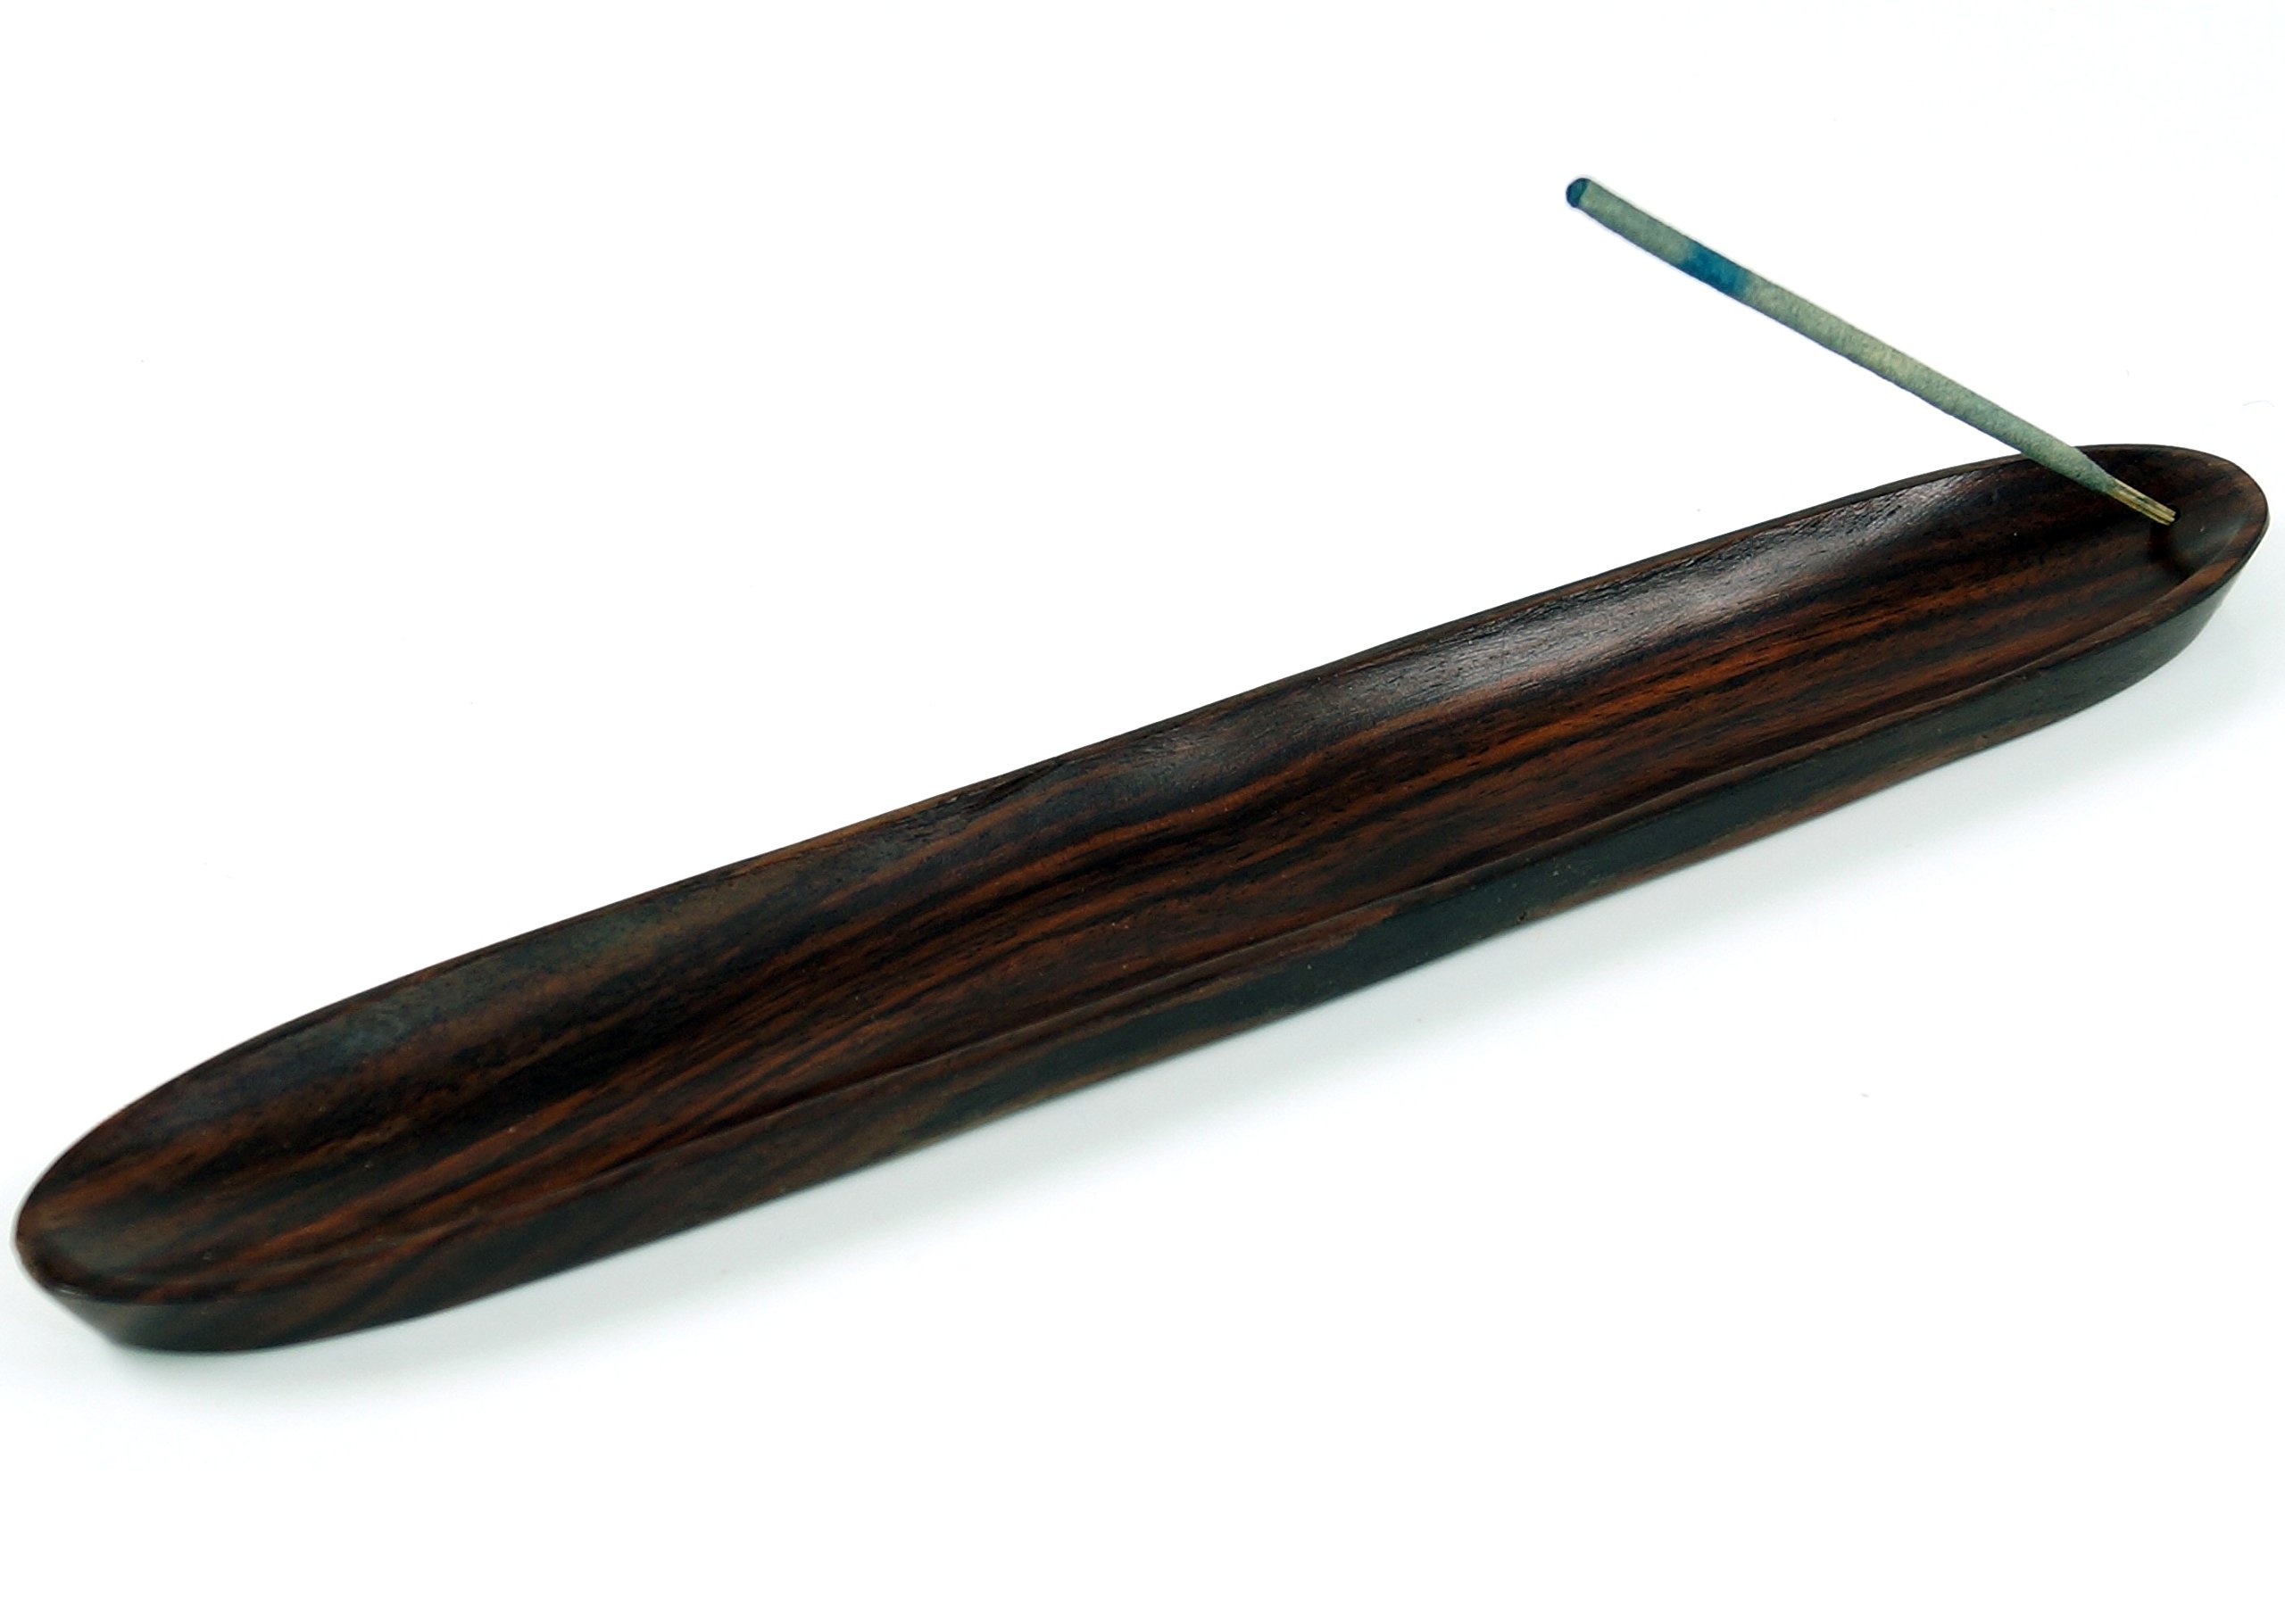 GURU SHOP Räucherstäbchenhalter aus Indonesien - Dunkel, Braun, Holz, 1,5x30x5 cm, Räucherstäbchen Halter